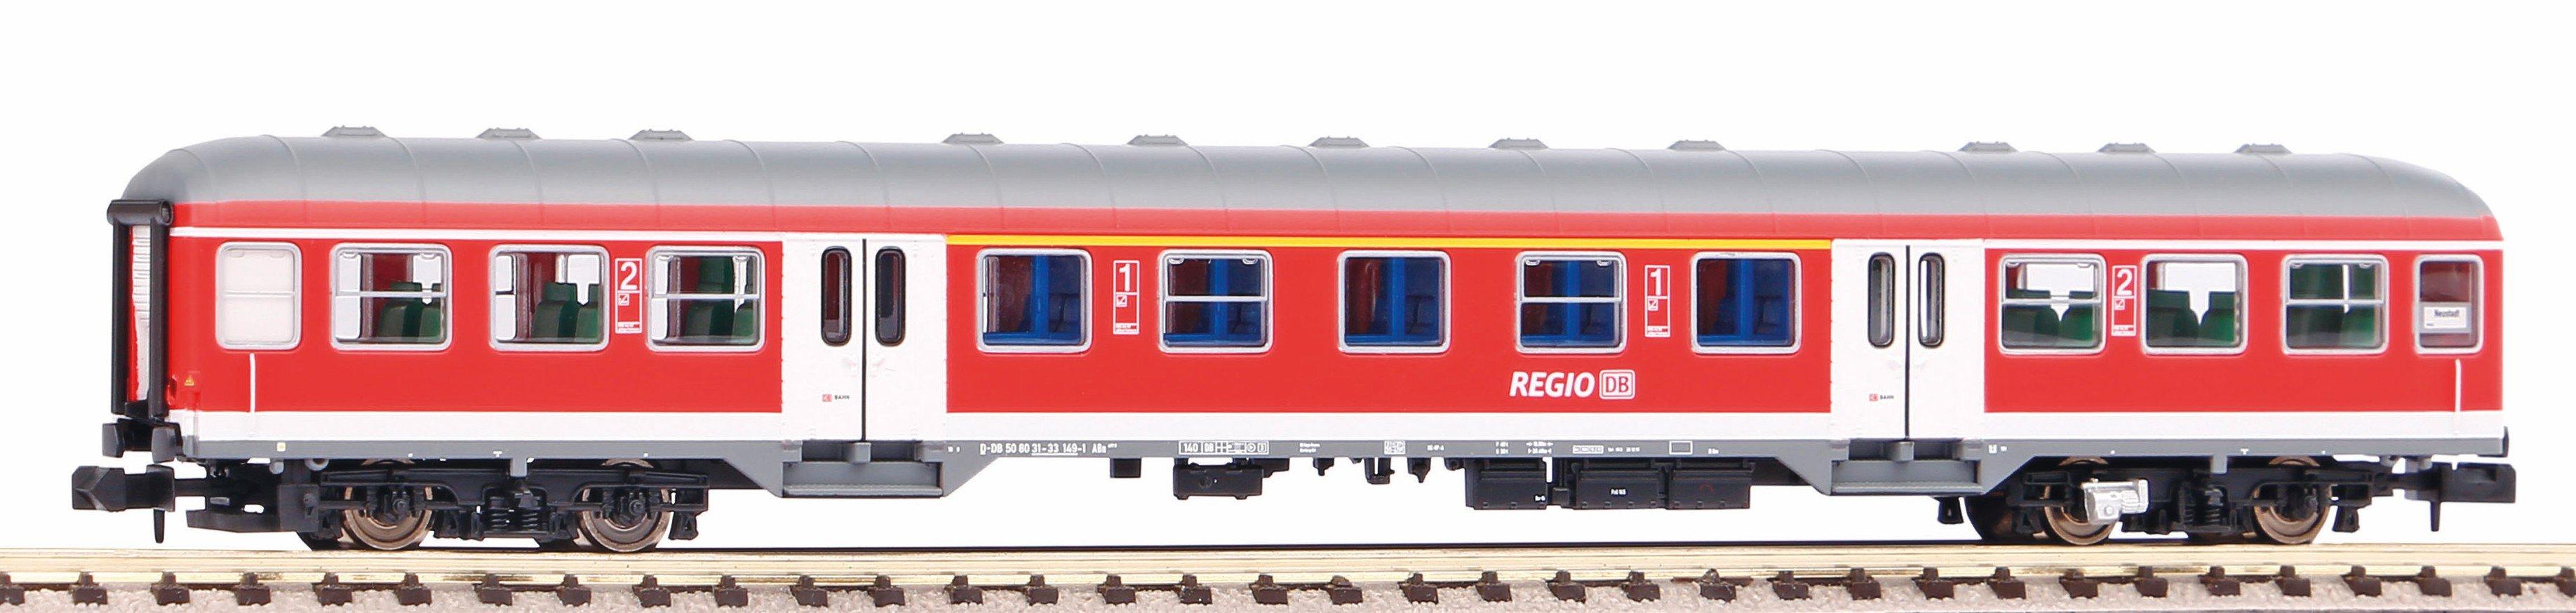 PIKO  PIKO 40643 modellino in scala Modello di treno N (1:160) 